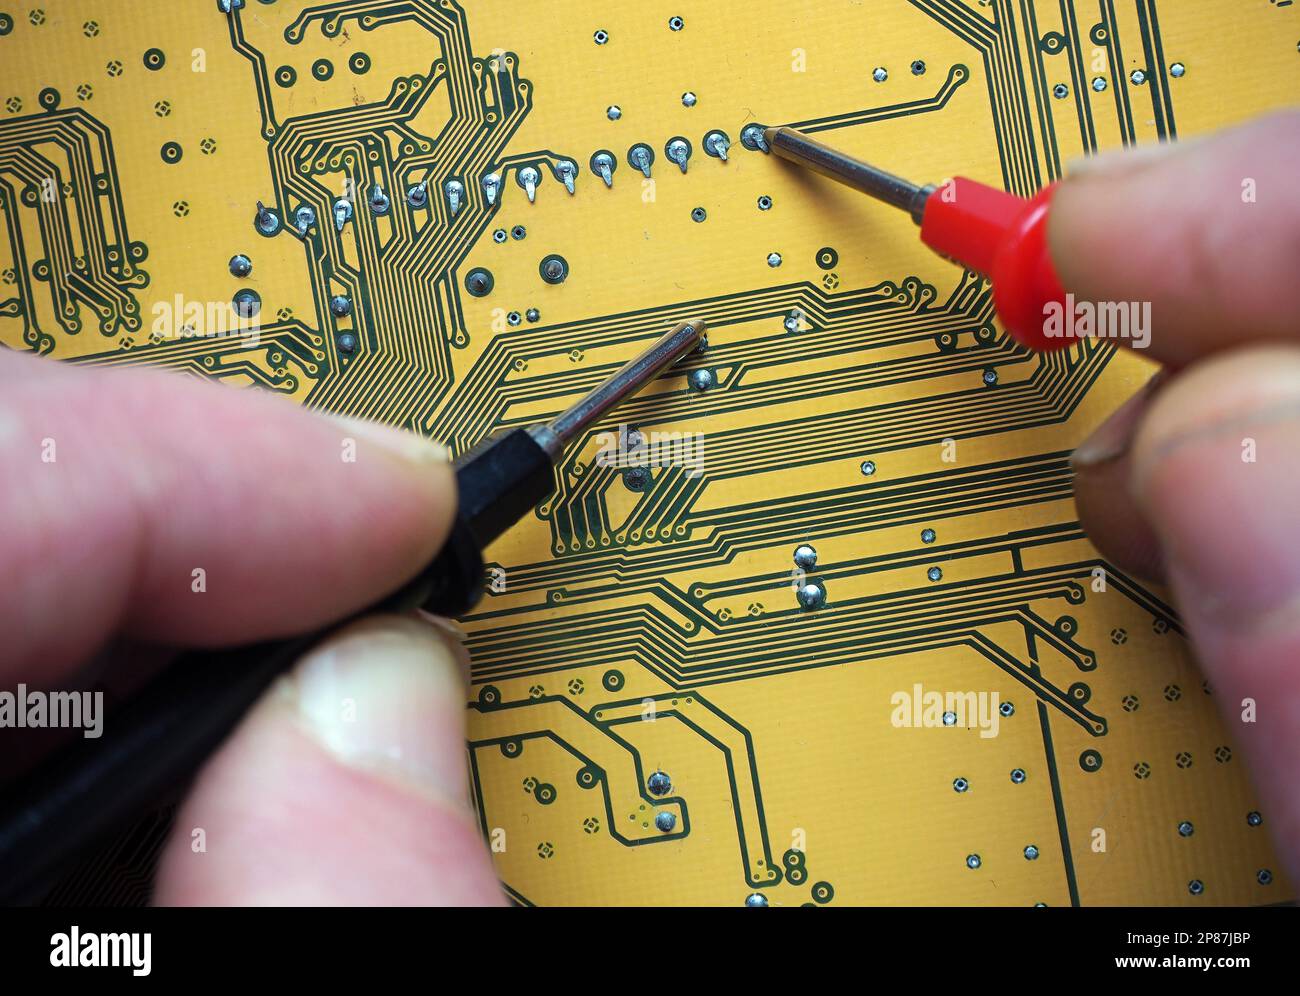 Fehlererkennung mit Prüfspitzen auf einer digitalen Platine. Reparatur eines elektronischen Geräts. Hintergrund der Elektronikindustrie. Stockfoto